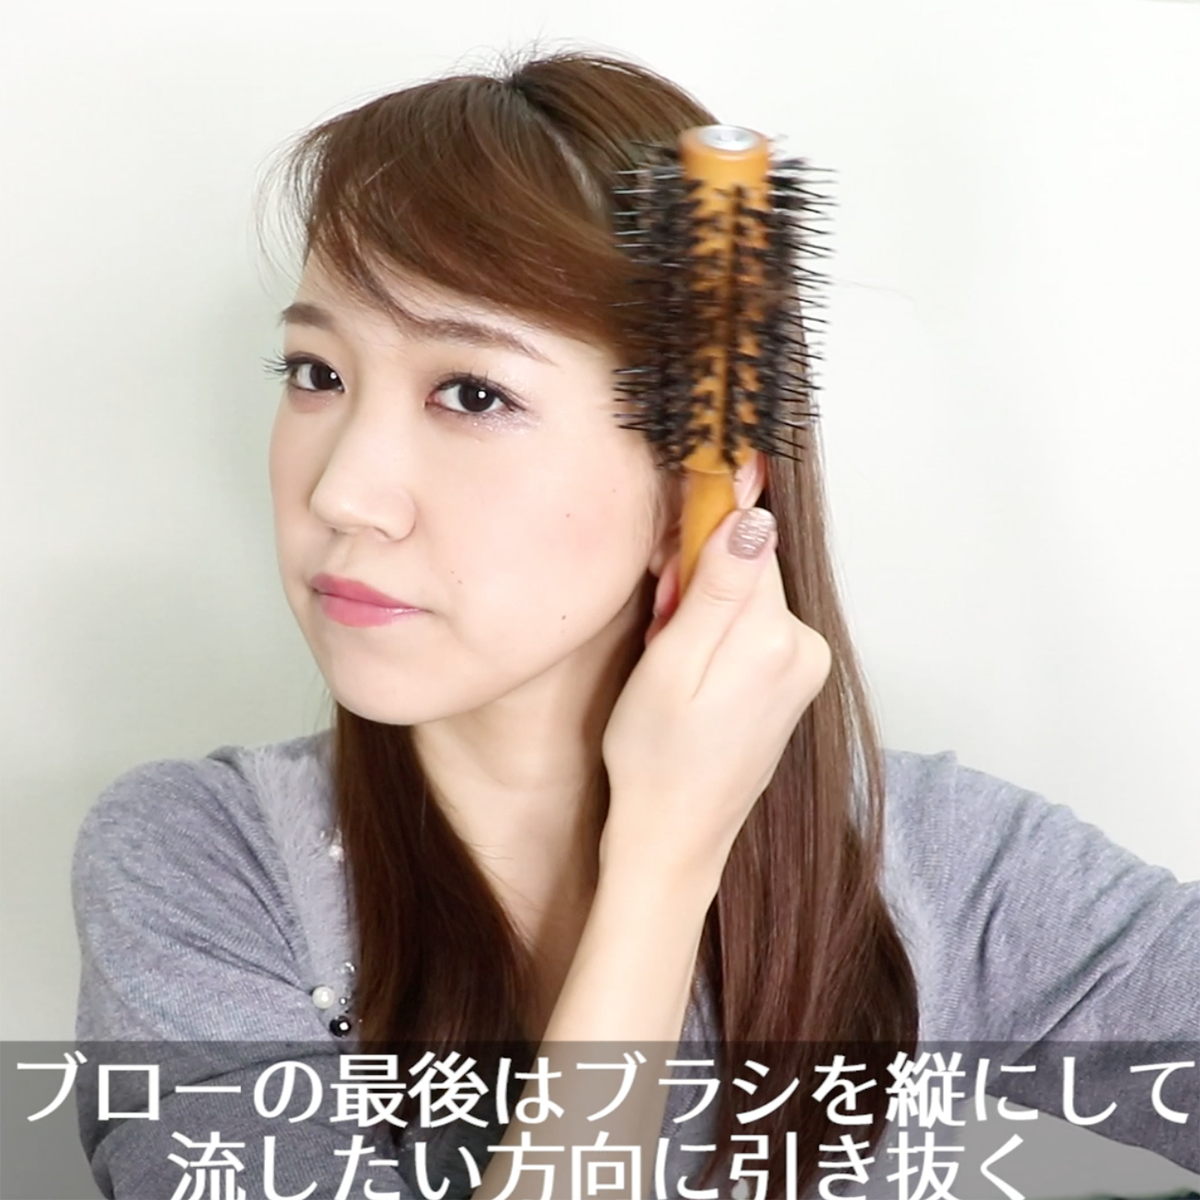 ぱっくり割れ前髪からふんわり流し前髪の作り方 Beautybrush 常岡珠希ブログ